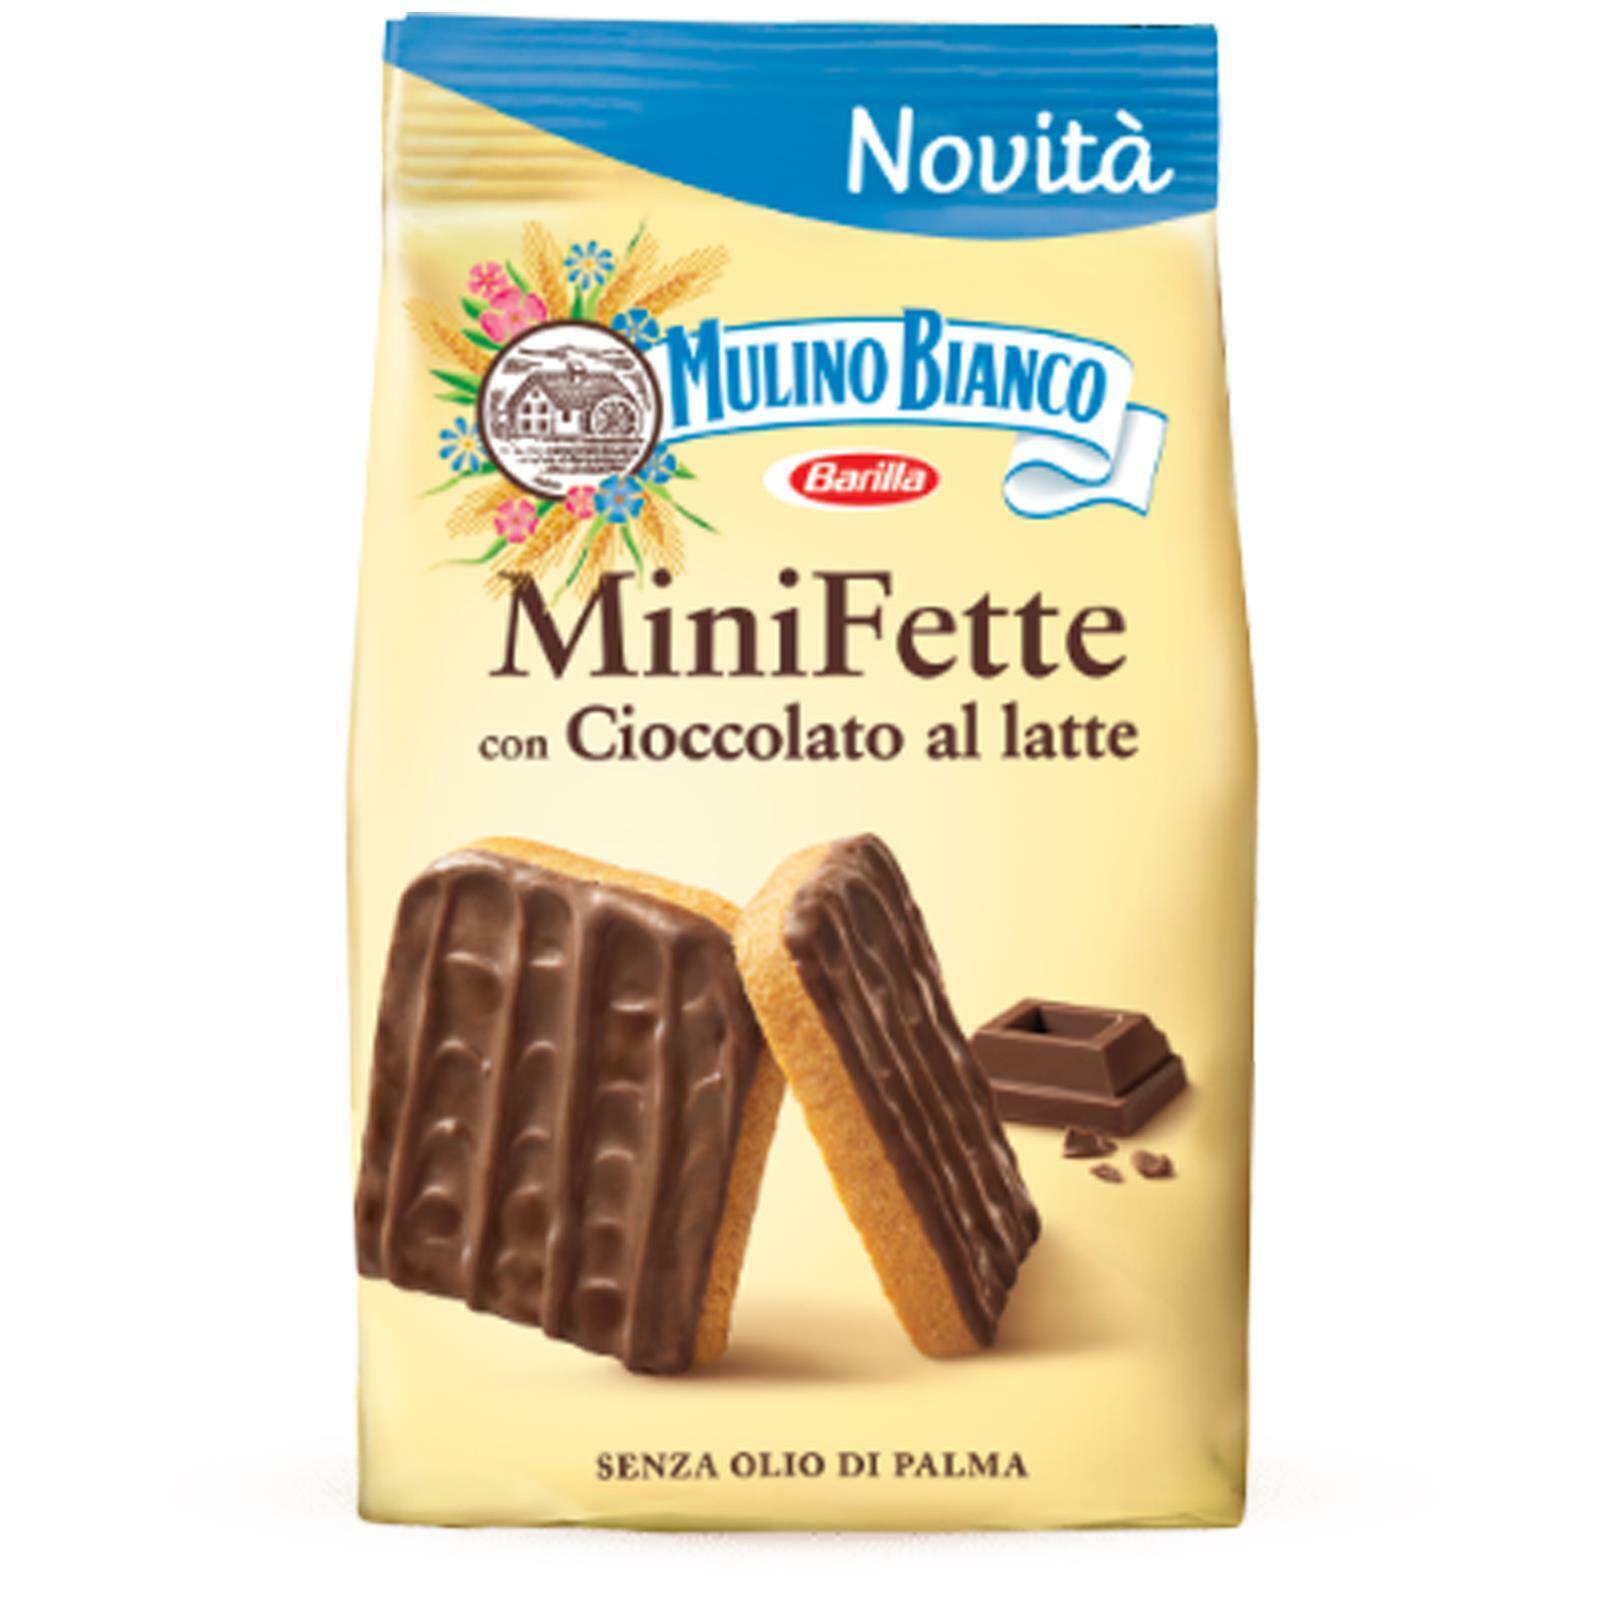 MiniFette Cu Ciocolata Mulino Bianco